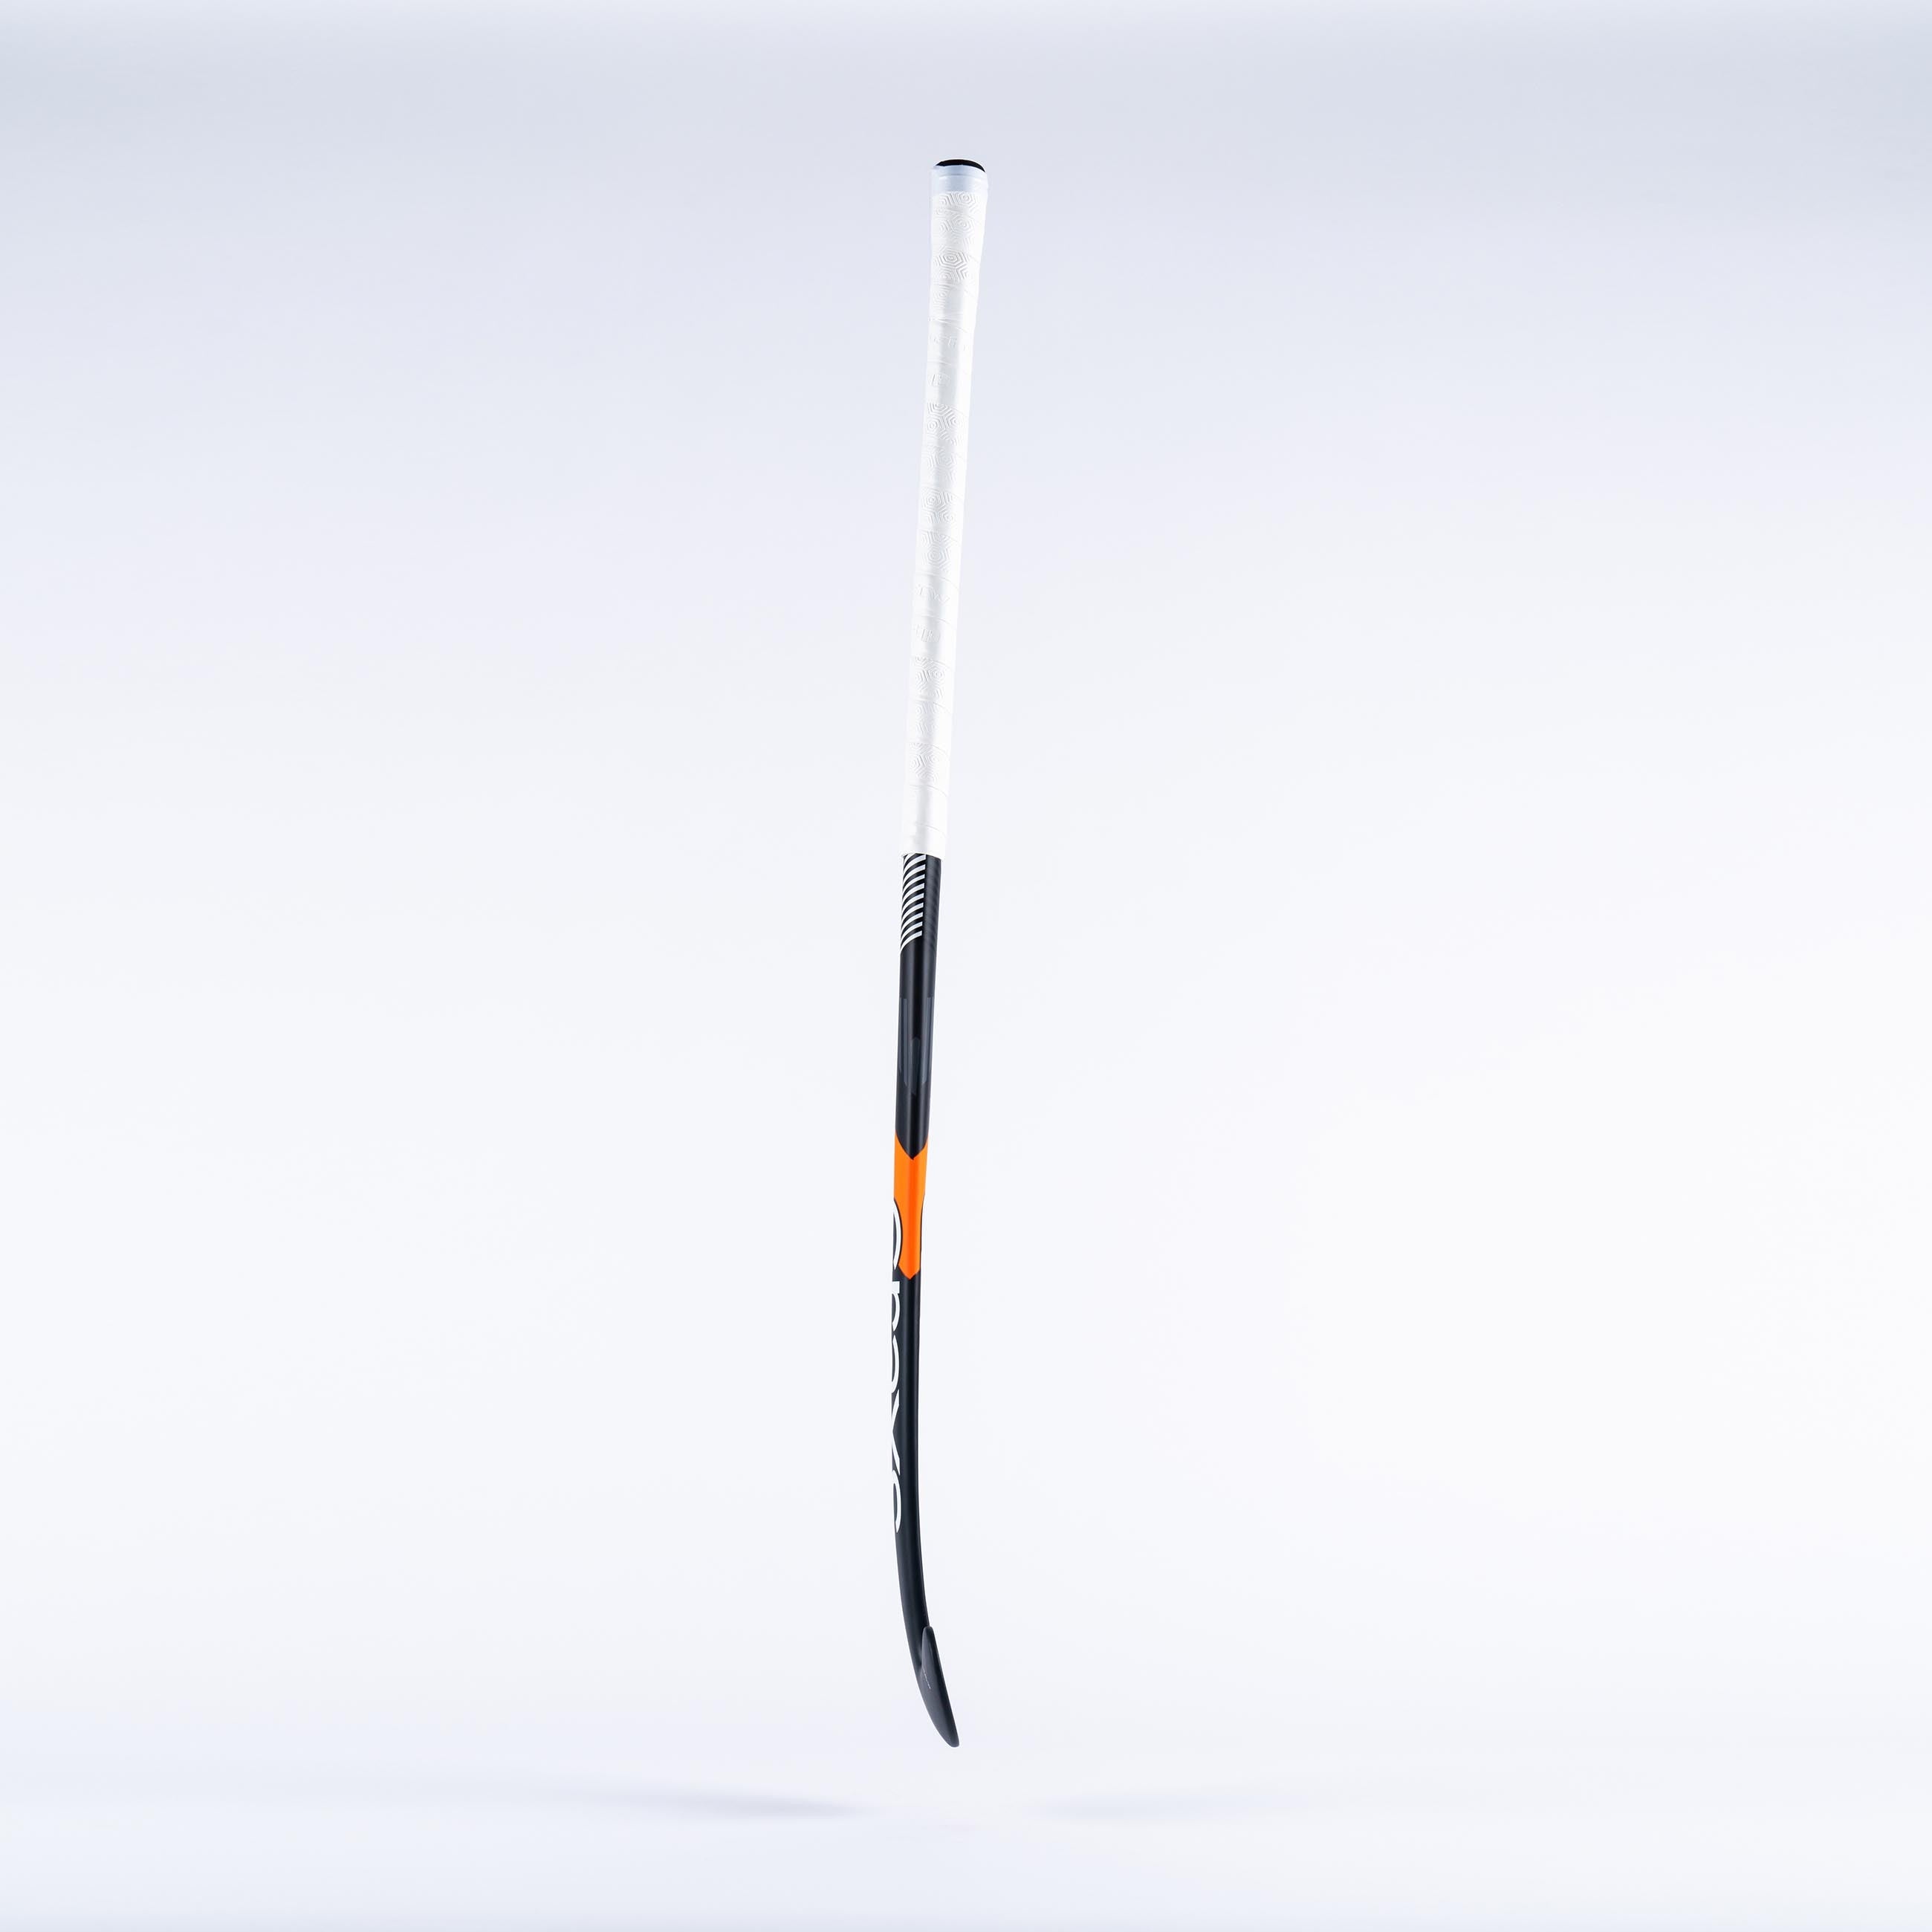 GTI10000 Probow Composite Indoor Hockey Stick